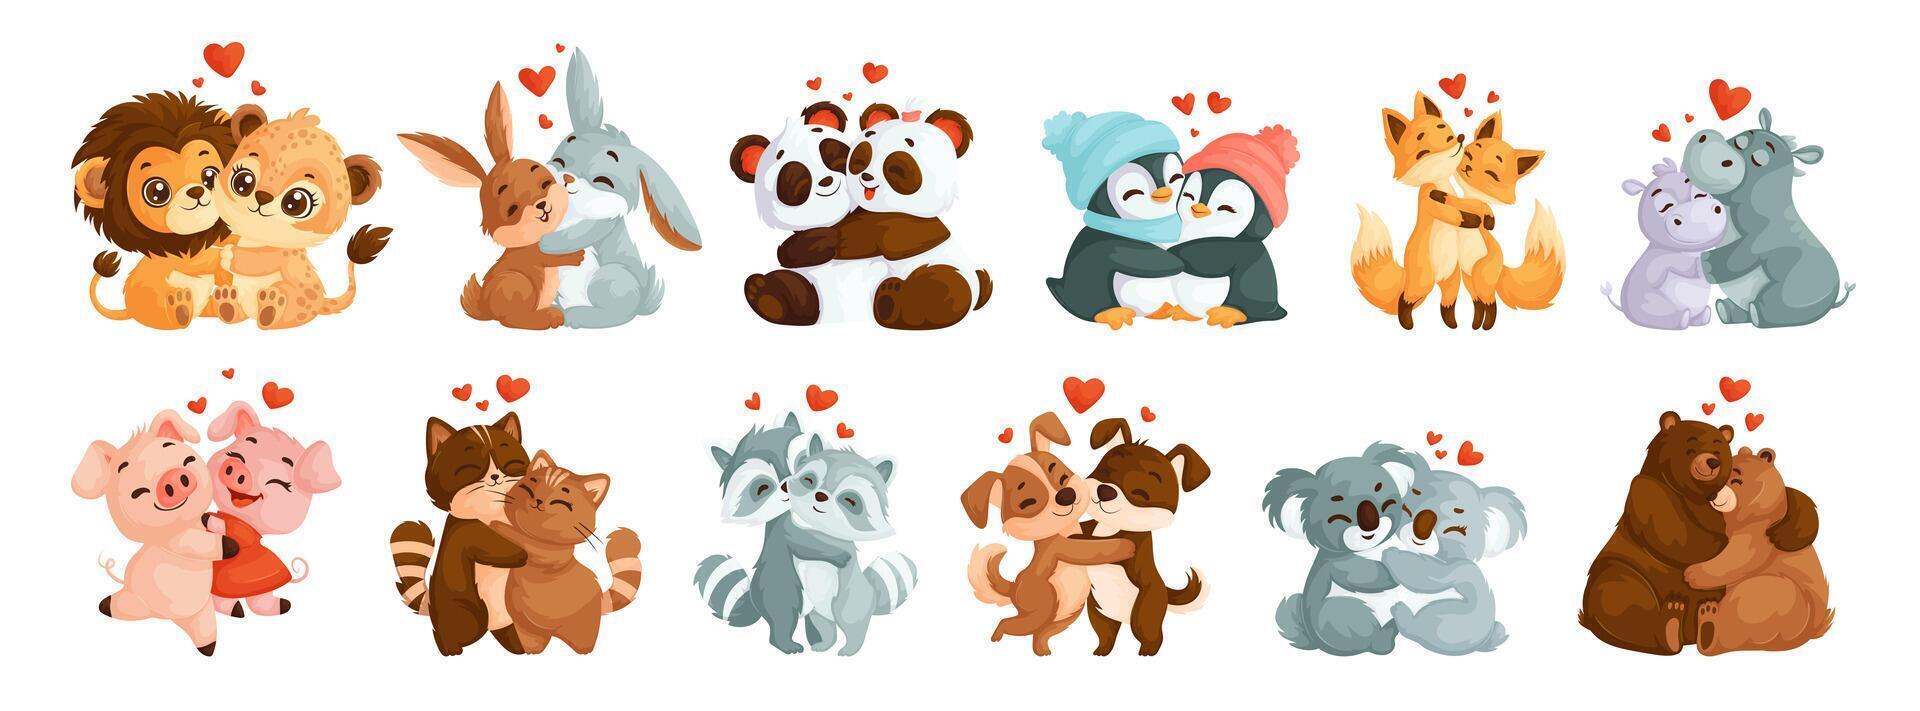 uppsättning av söt, kärleksfull kramas djur. lejon, harar, pandor, flodhästar, rävar, pingviner, smågrisar, katter, hundar, tvättbjörnar, koalor och björnar. djur- par i kärlek i tecknad serie stil vektor